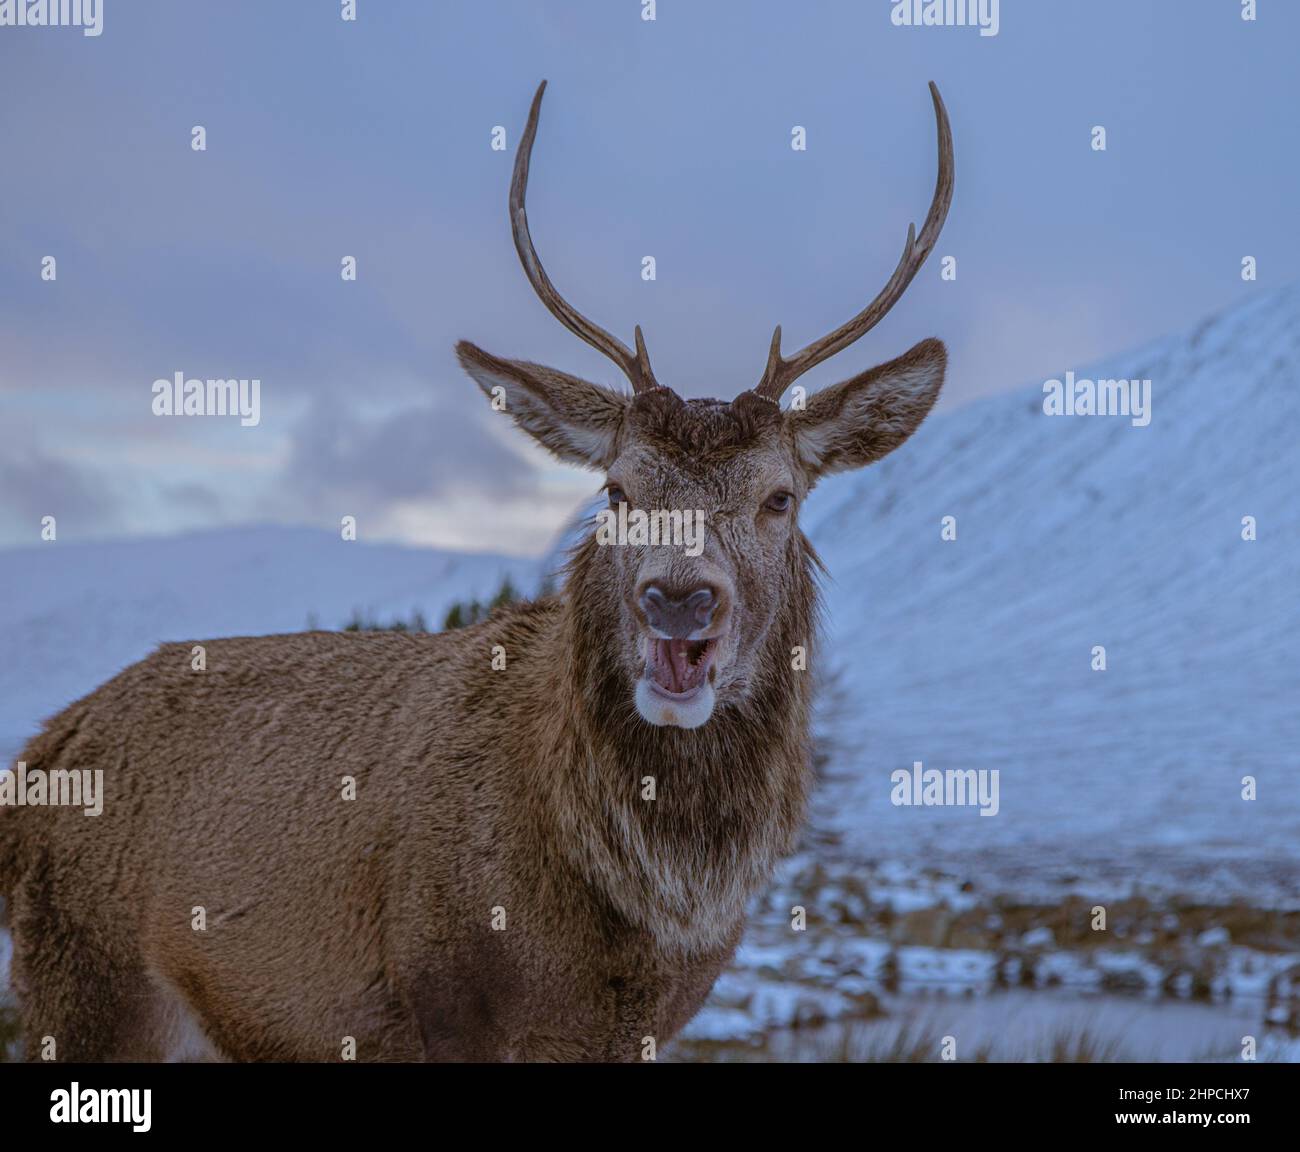 Un cerf pose pour la caméra lors d'une journée d'hiver à Glencoe, en Écosse Banque D'Images